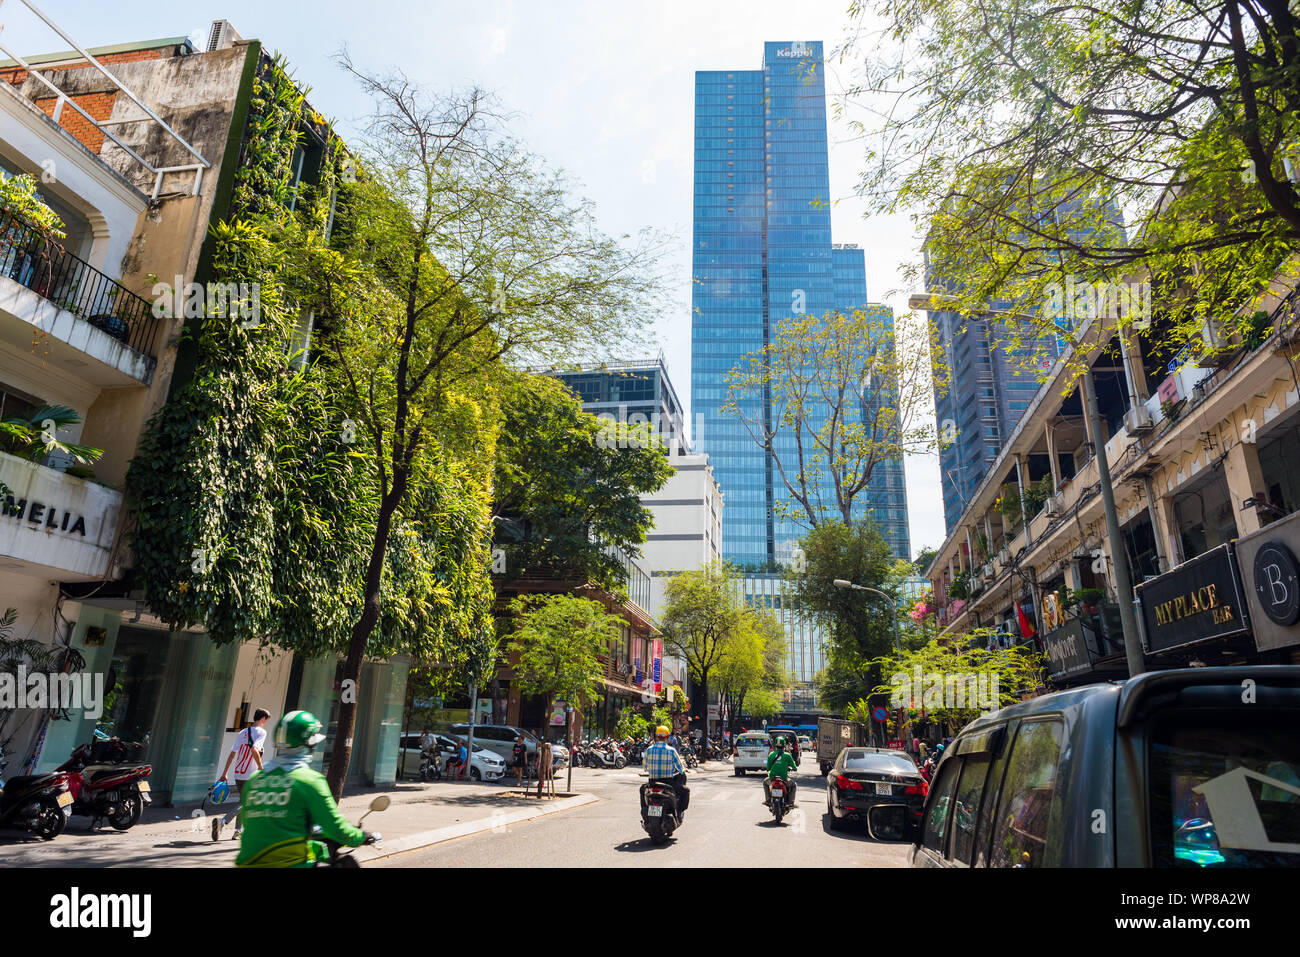 La città di Ho Chi Minh, Vietnam - 13 Aprile 2019: una strada del centro cittadino con una casa con un paesaggio verticale e una torre del centro di Saigon. Foto Stock